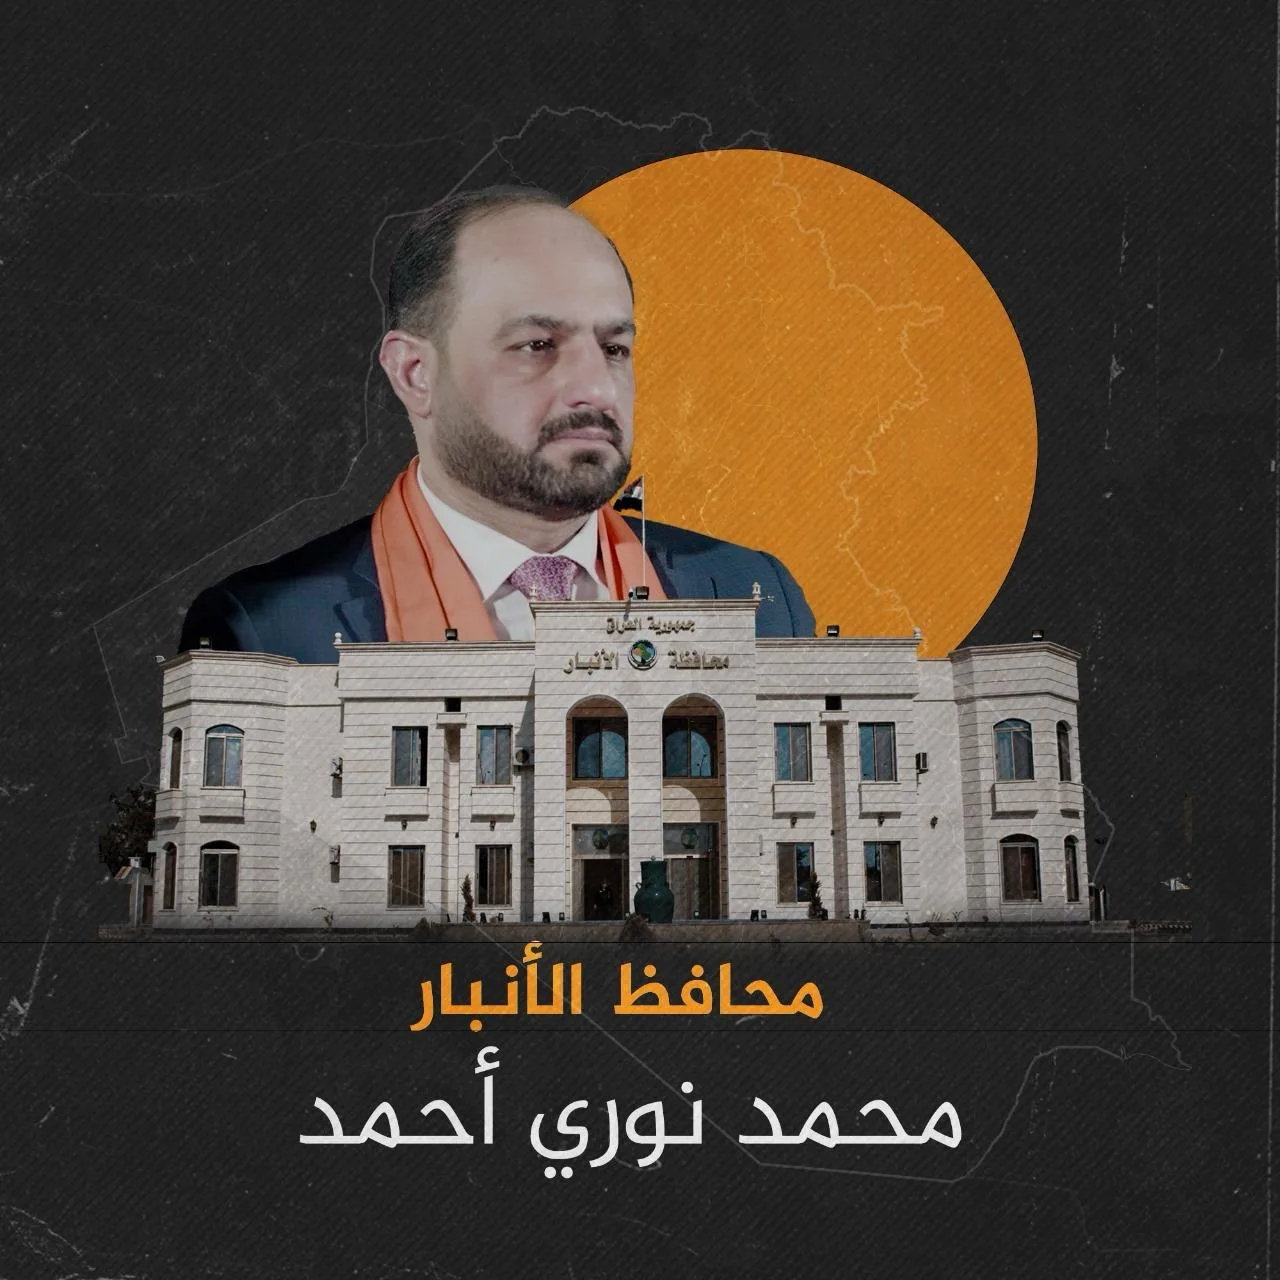 محمد نوري الكربولي ويكيبيديا؛ تعرف على محافظ الانبار الجديد في دولة العراق